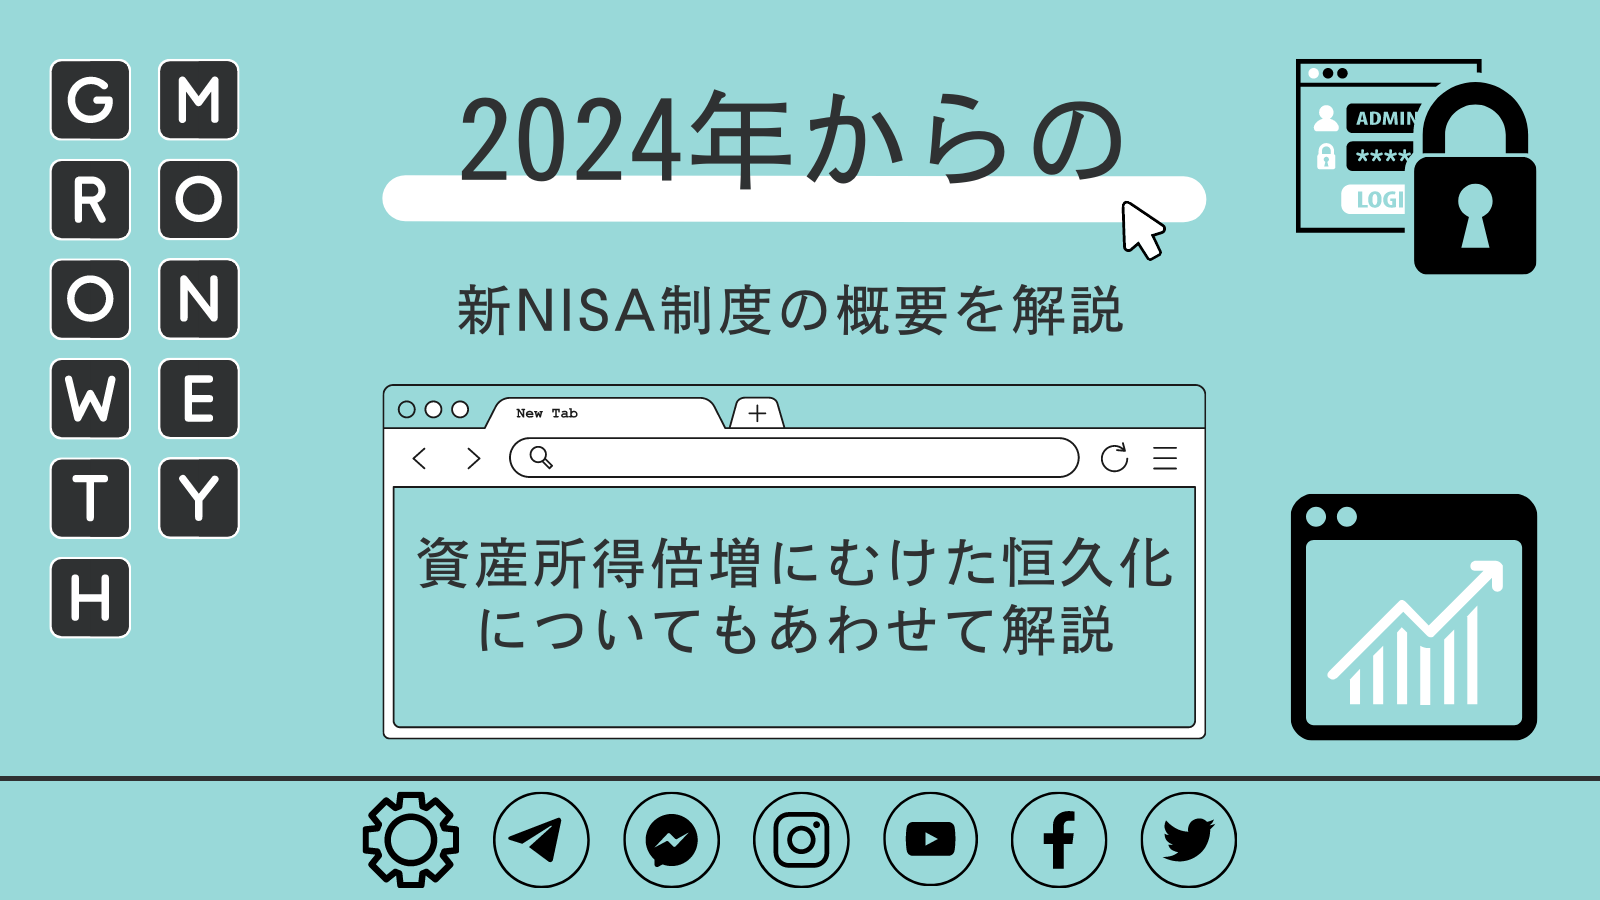 2024年からの新NISA制度の概要を解説